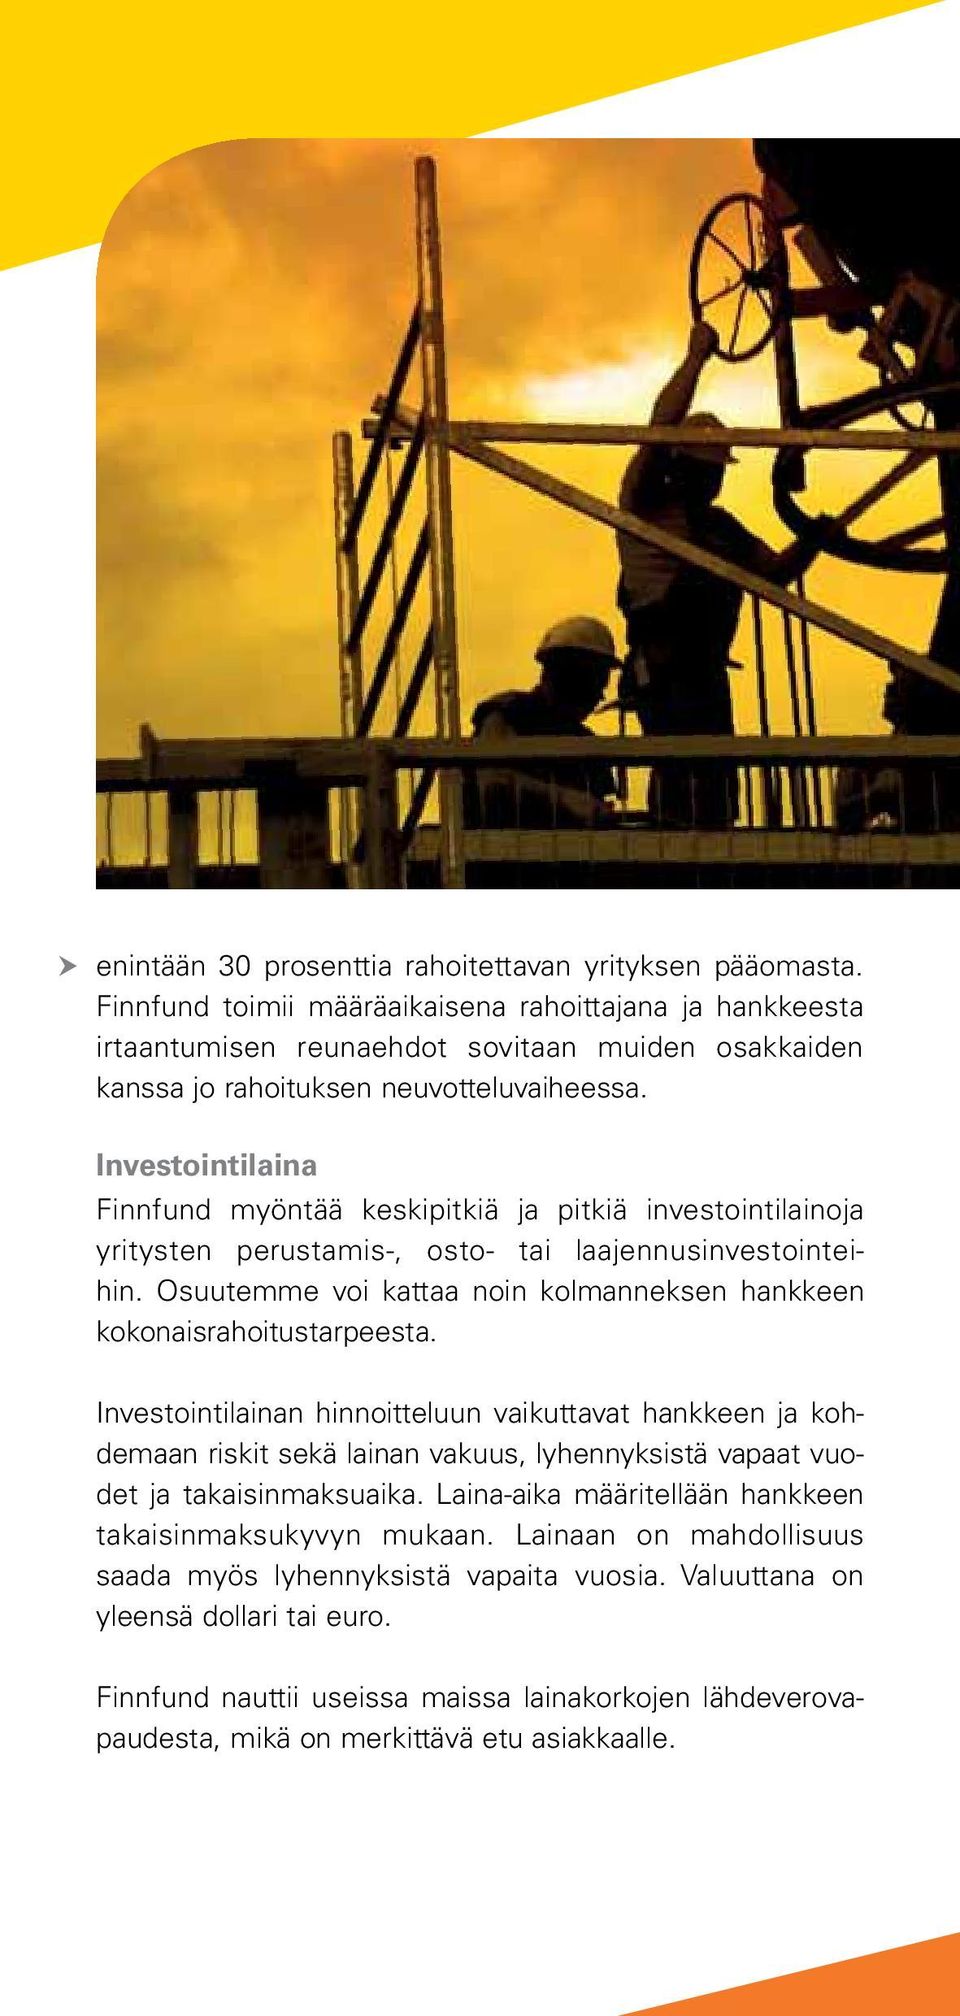 Investointilaina Finnfund myöntää keskipitkiä ja pitkiä investointilainoja yritysten perustamis-, osto- tai laajennusinvestointeihin.